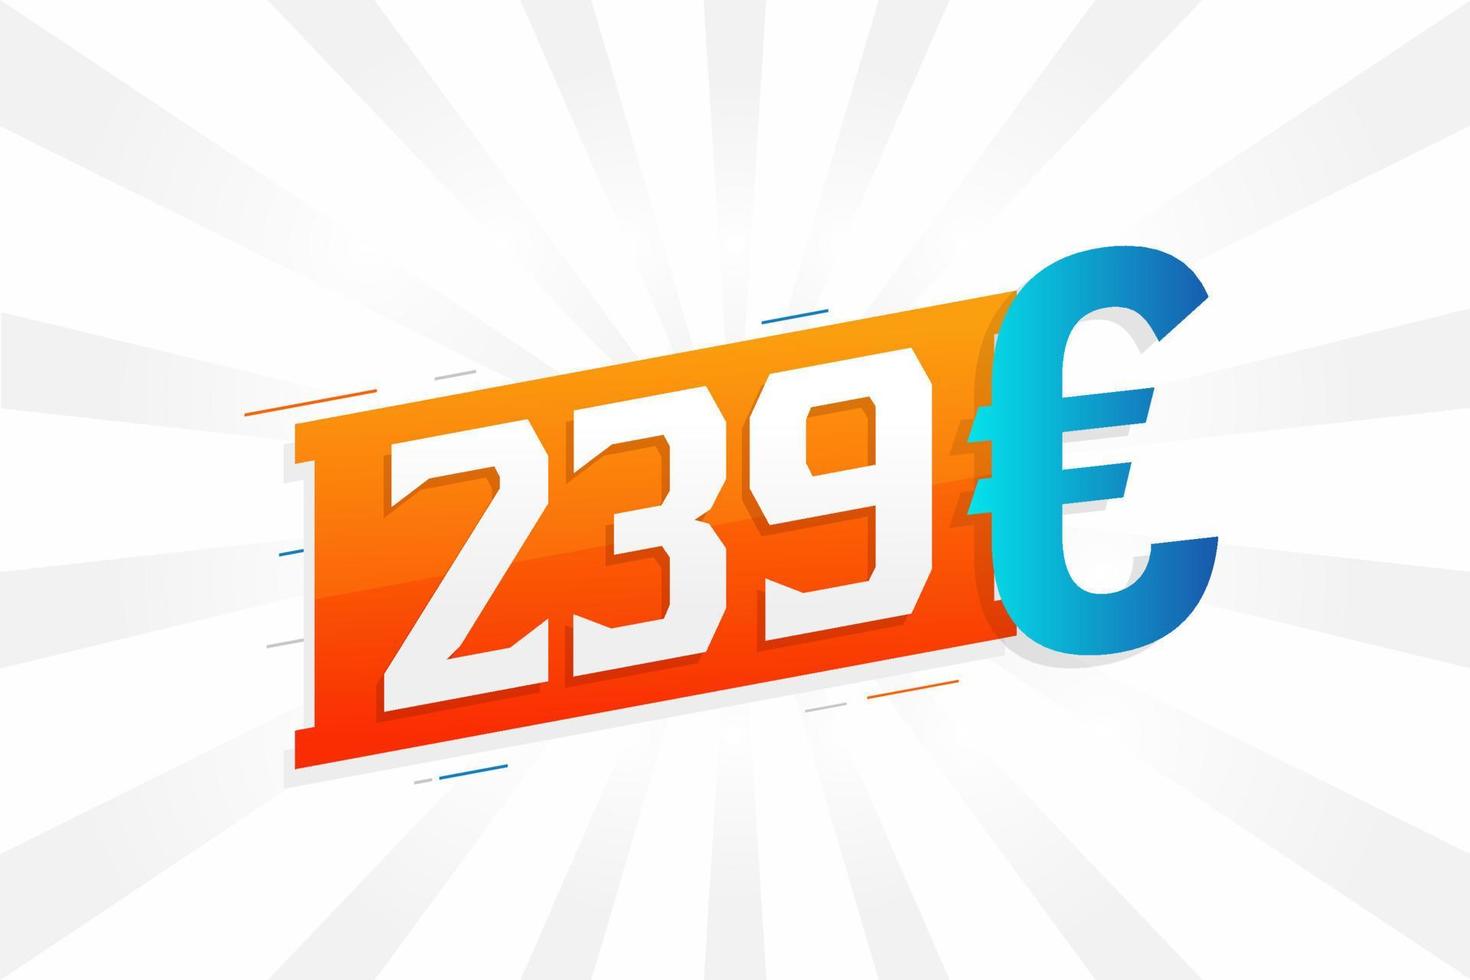 Symbole de texte vectoriel de devise 239 euros. 239 euros vecteur de stock d'argent de l'union européenne